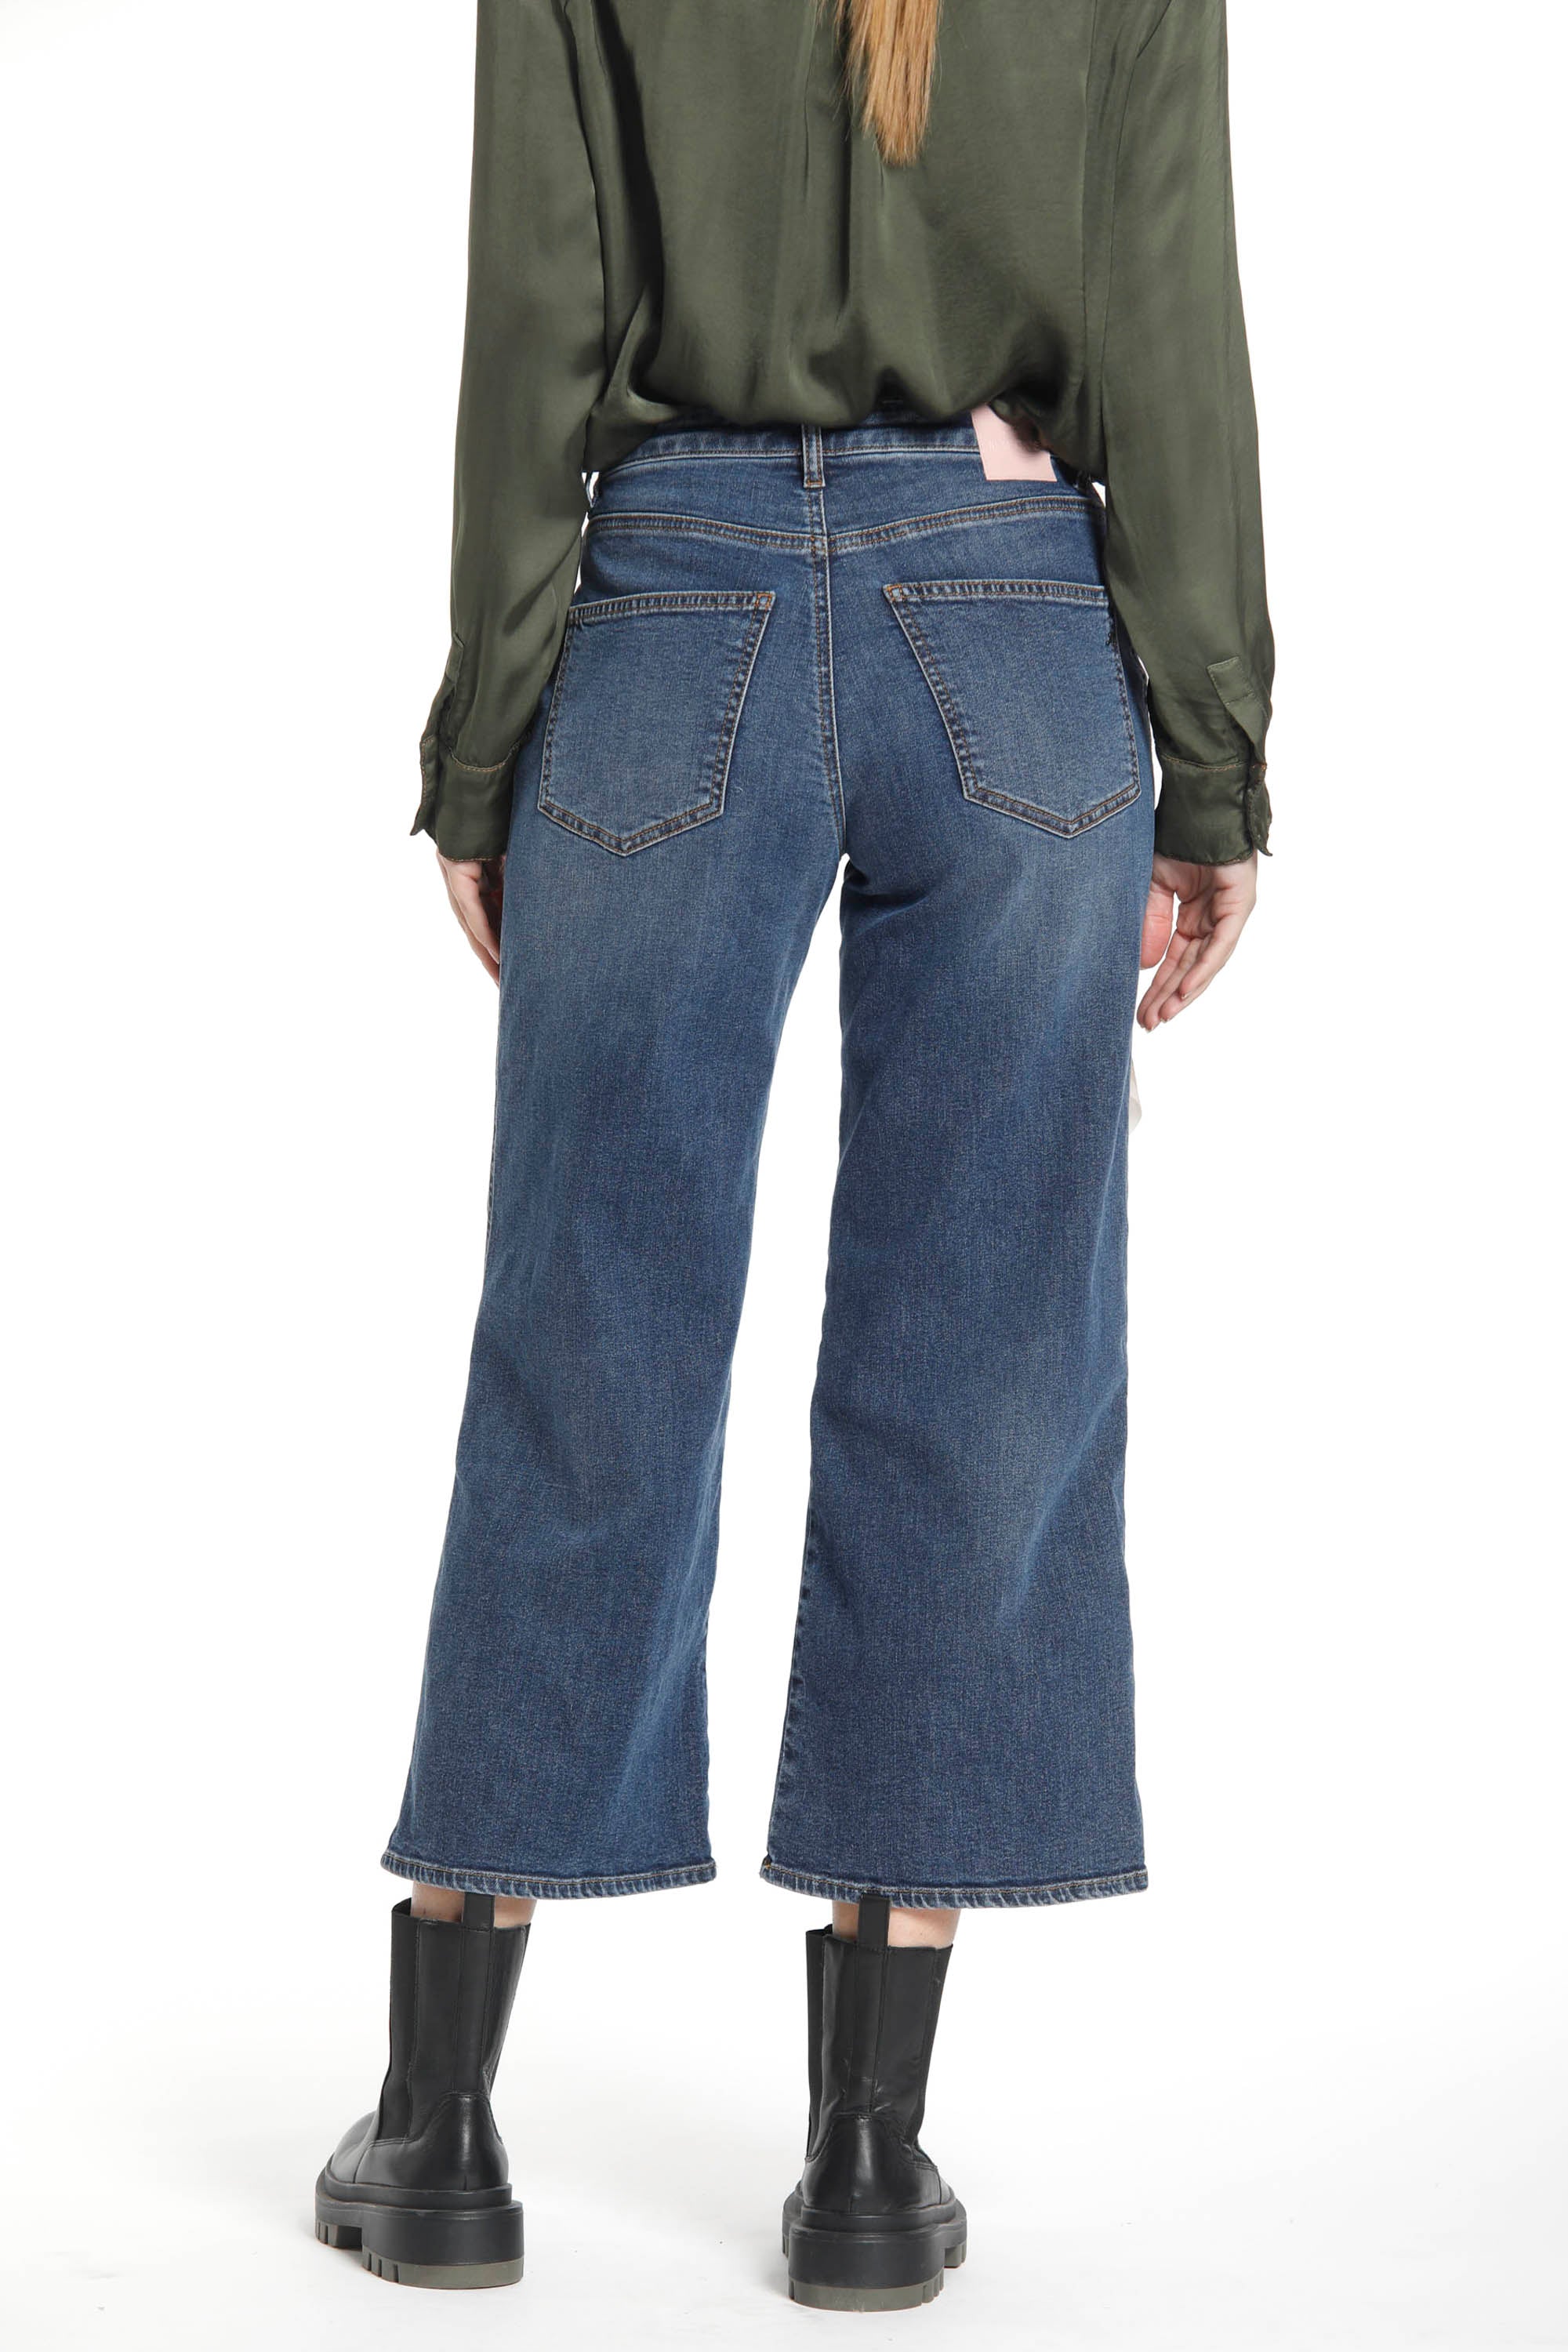 Image 3 de pantalon femme 5 poches en denim stretch couleur bleu marine modèle Samantha de Mason's